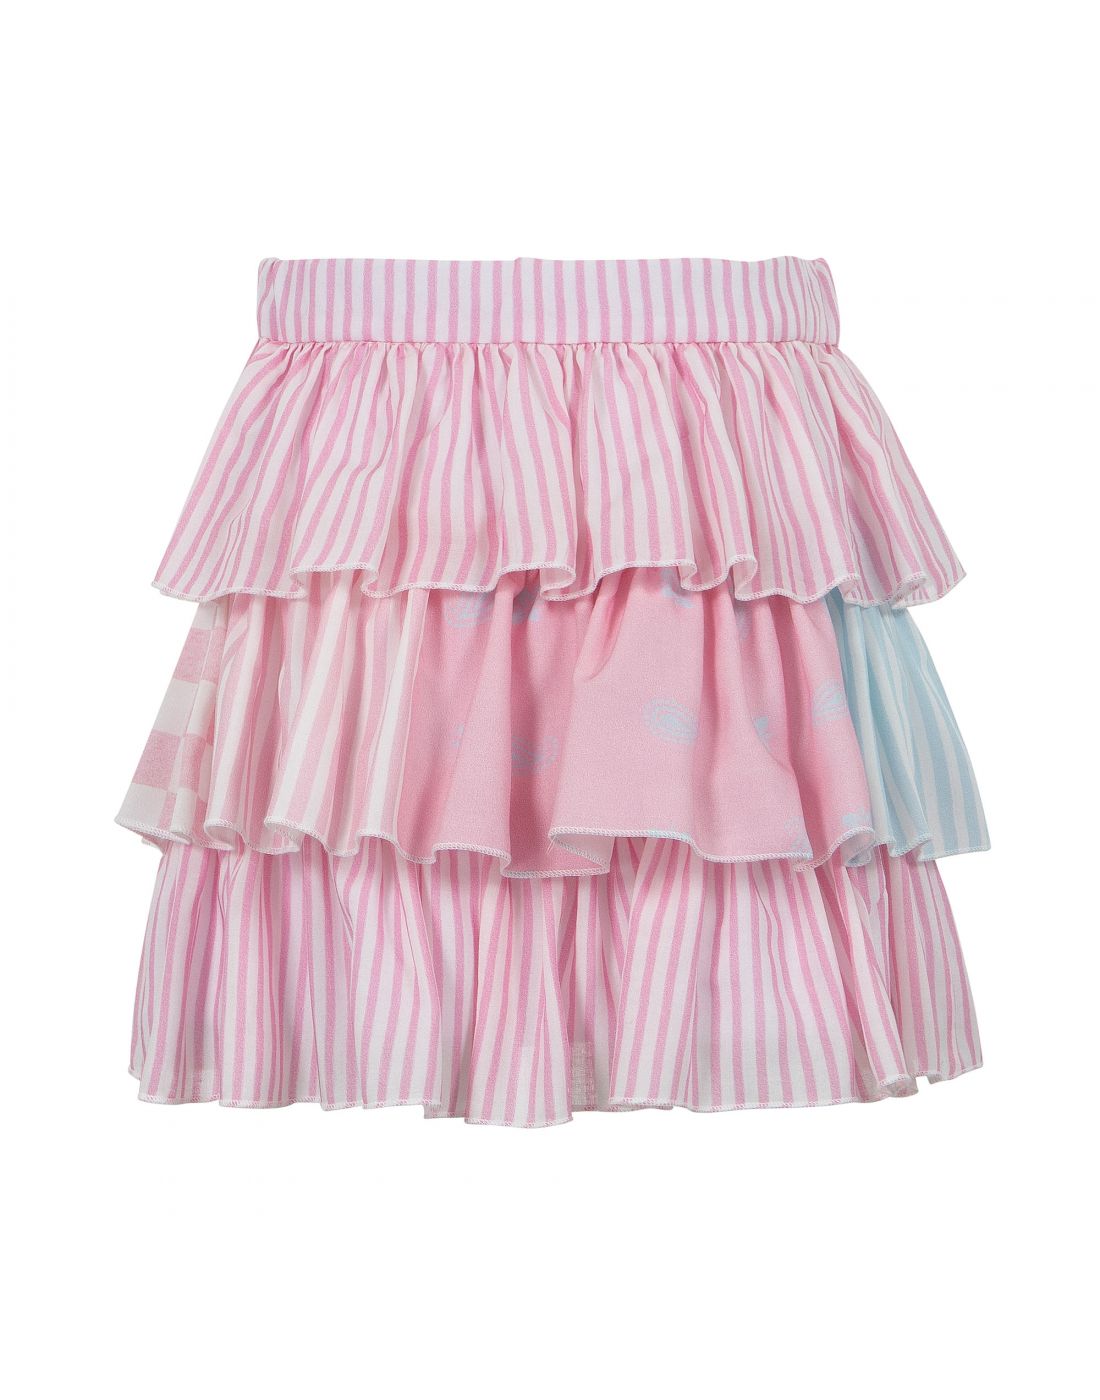 Lapin Girls Top & Skirt Set